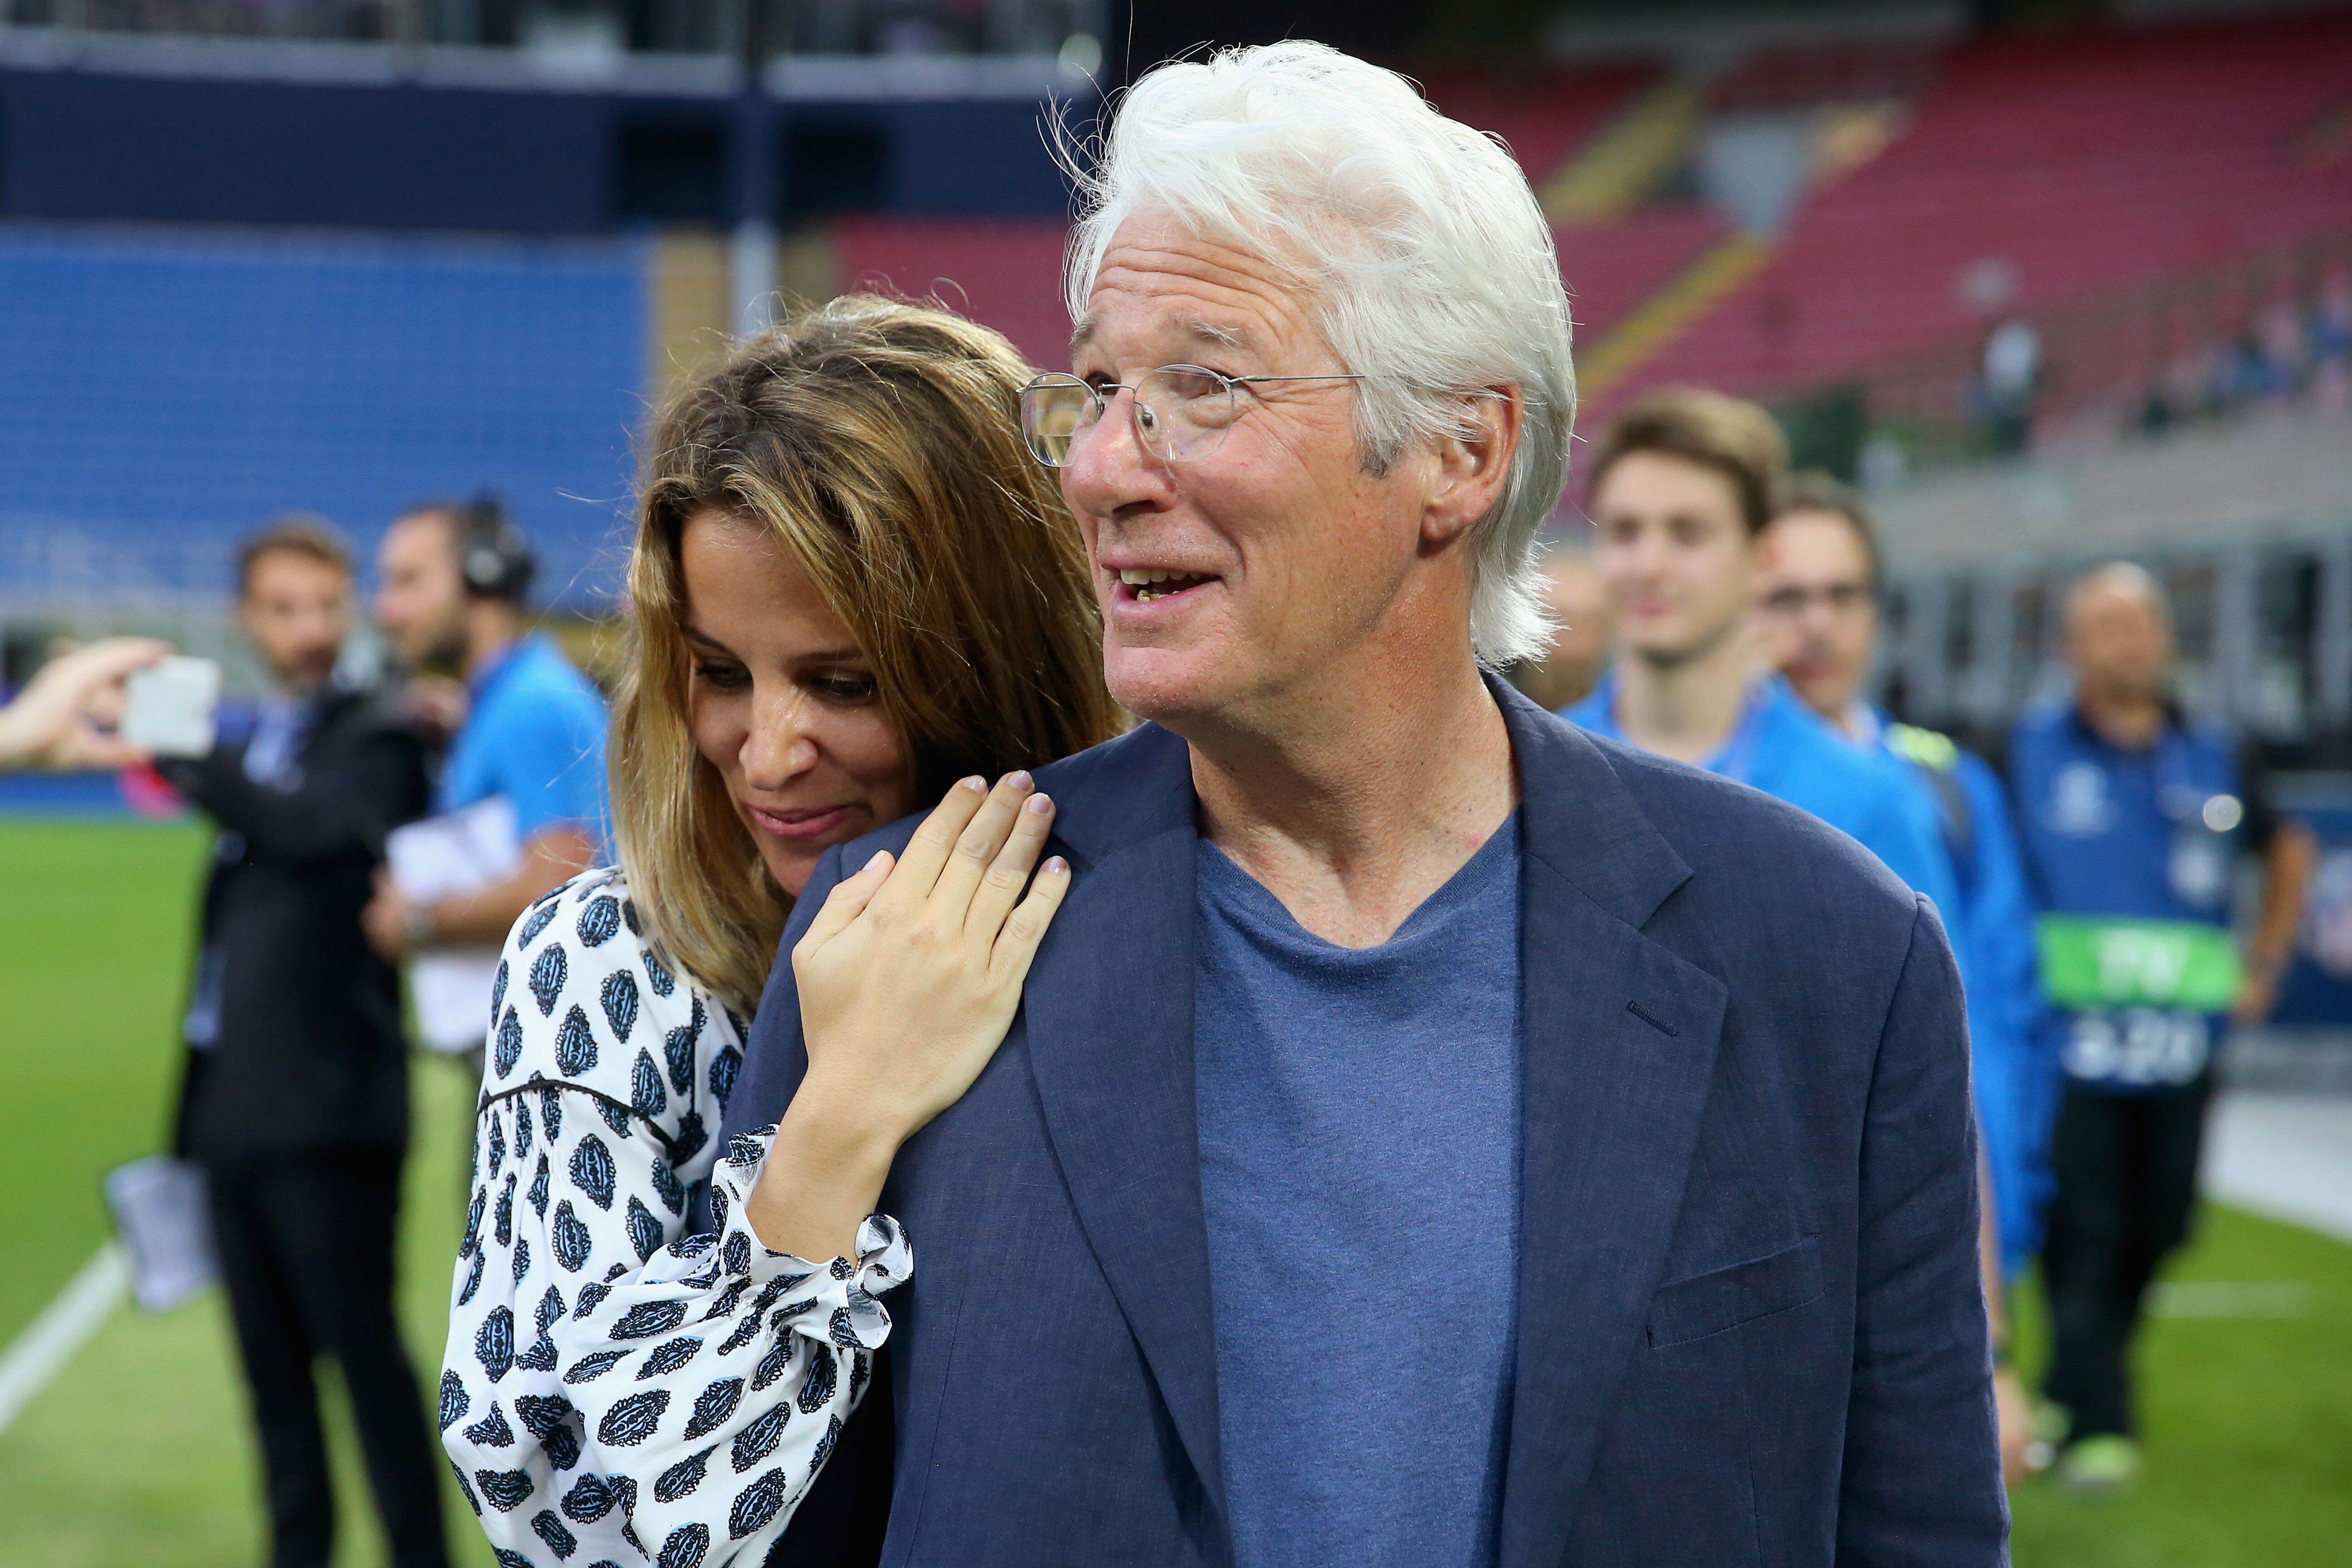  Richard Gere et sa petite amie Alejandra Silva au Stadio Giuseppe Meazza le 27 mai 2016 à Milan, Italie. | Photo : Getty Images